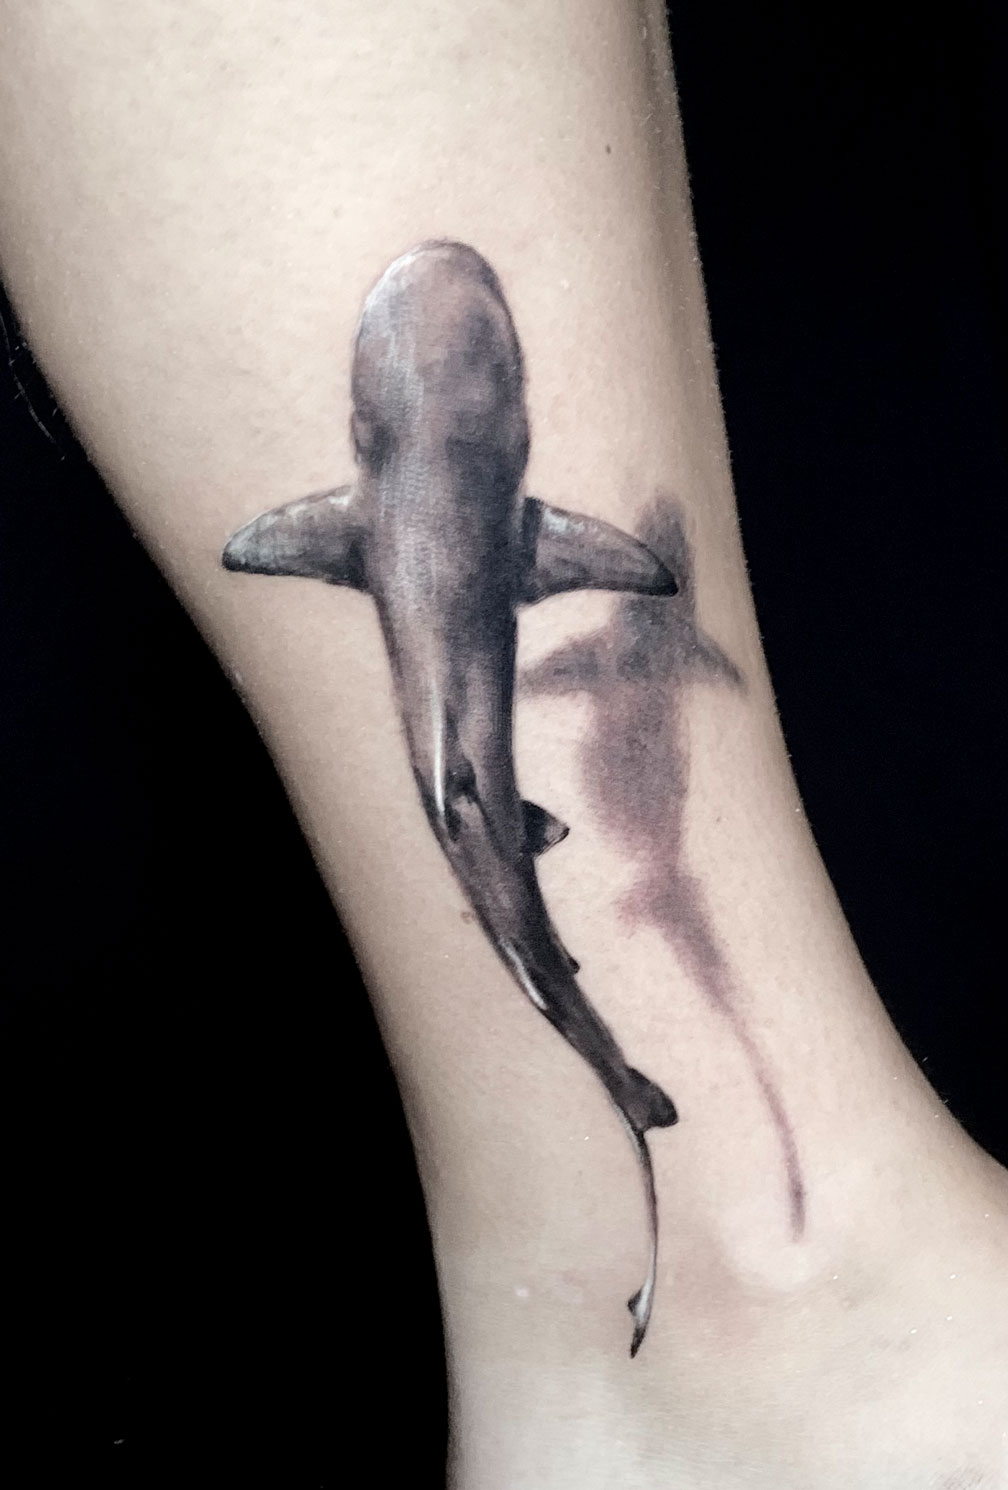 Tattoo Anansi Studio München Munich Haidhausen Tim small shark shadow 3d traveltattoo best black and grey realistic